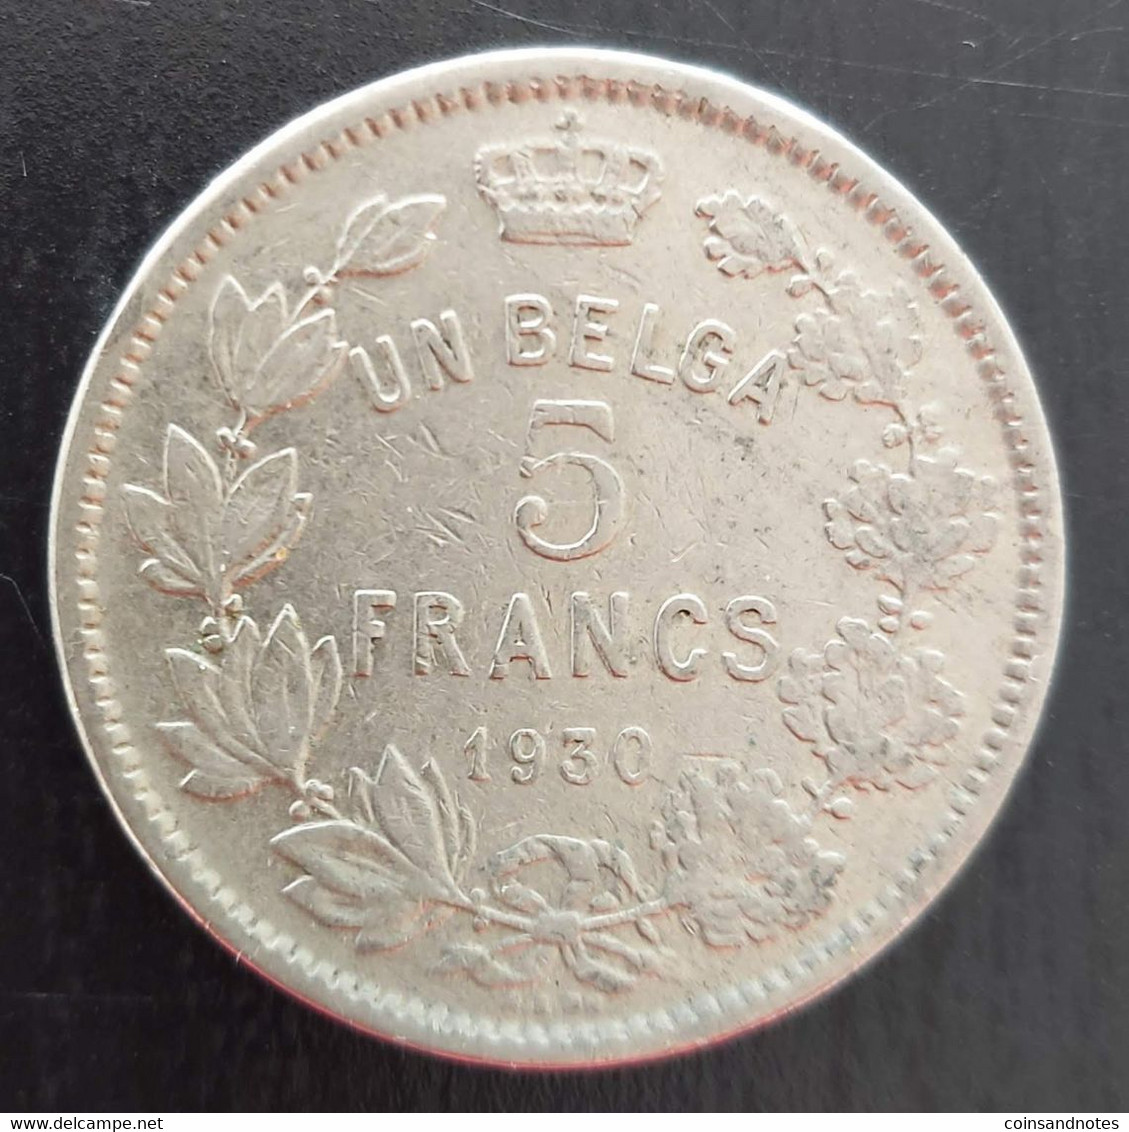 Belgium 1930 - 5 Francs/Un Belga Nikkel FR - Albert I - Morin 382b - Pr - 5 Francs & 1 Belga